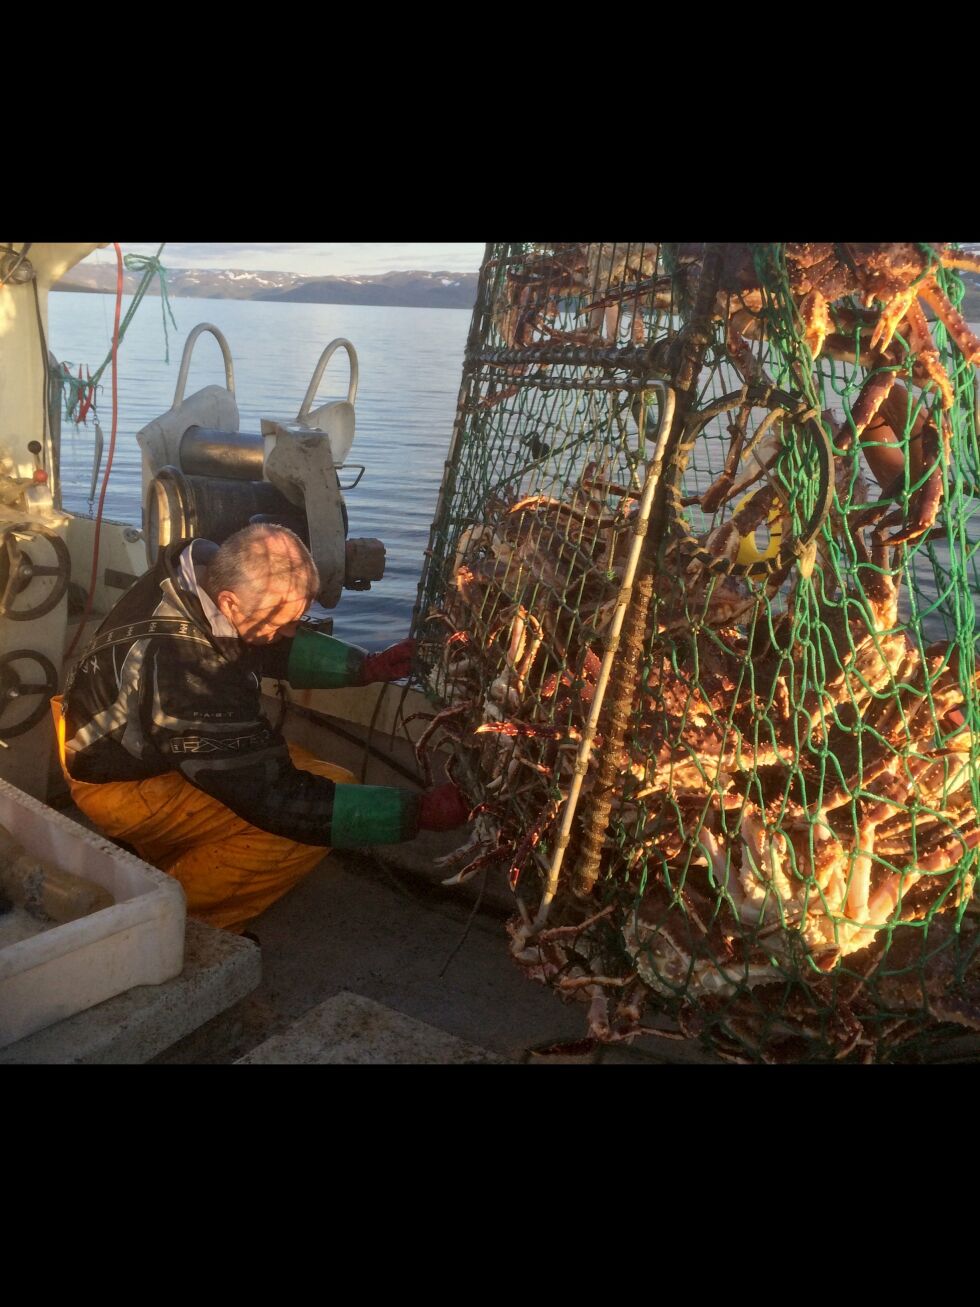 Tidligere har kongekrabbefisket vært forbeholdt fiskere bosatt i Øst-Finnmark, men nå vil regjeringen slippe til fiskere fra hele Finnmark fylke.
 Foto: Arkiv